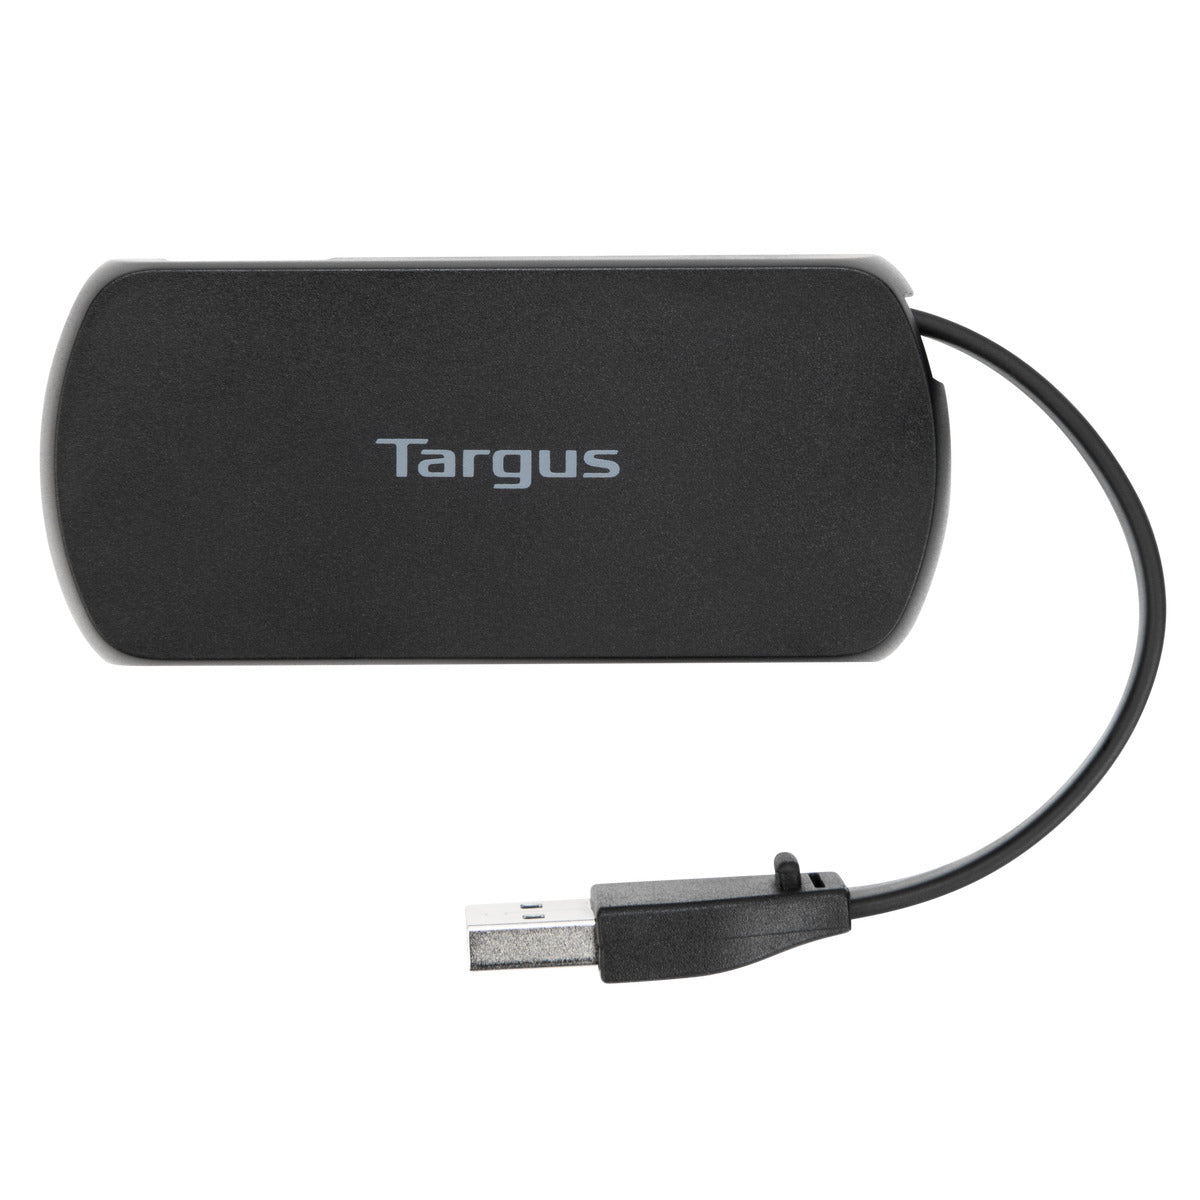 Targus ACH214 USB 2.0 4-Port Hub